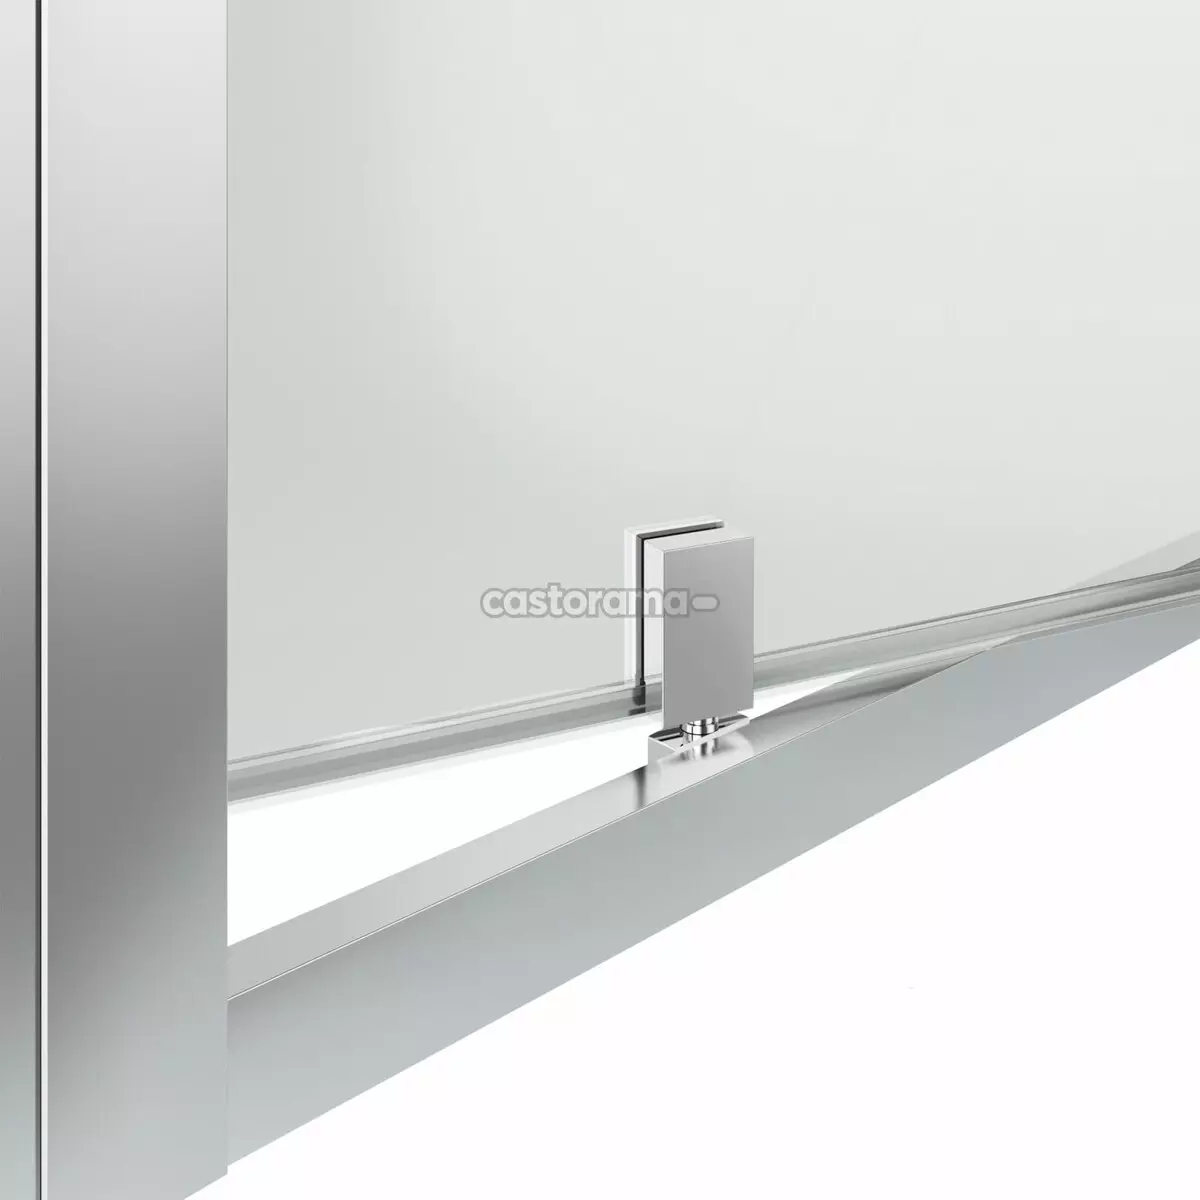 Duşlu kapılar: Katlanır açısal, kapılar 110-120 cm ve 130-170 cm, diğer boyutlar. Polikarbonat ve Kapı Coupe'den Almanya ve İtalya'dan gelen modeller 21396_62